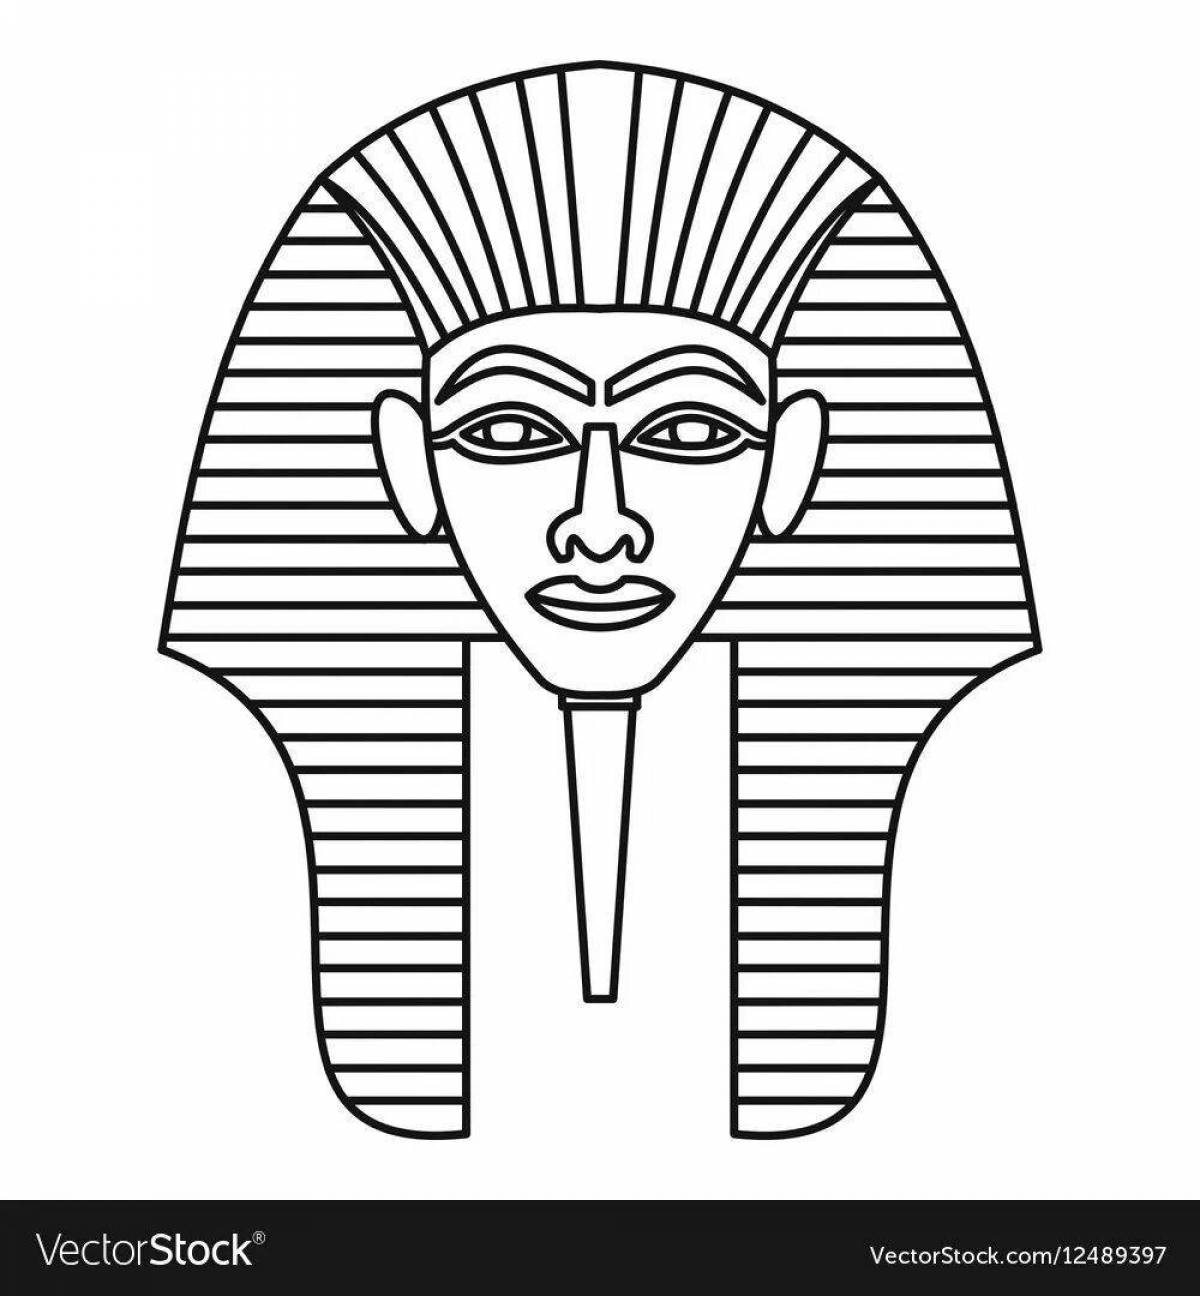 Раскраска необычная маска фараона